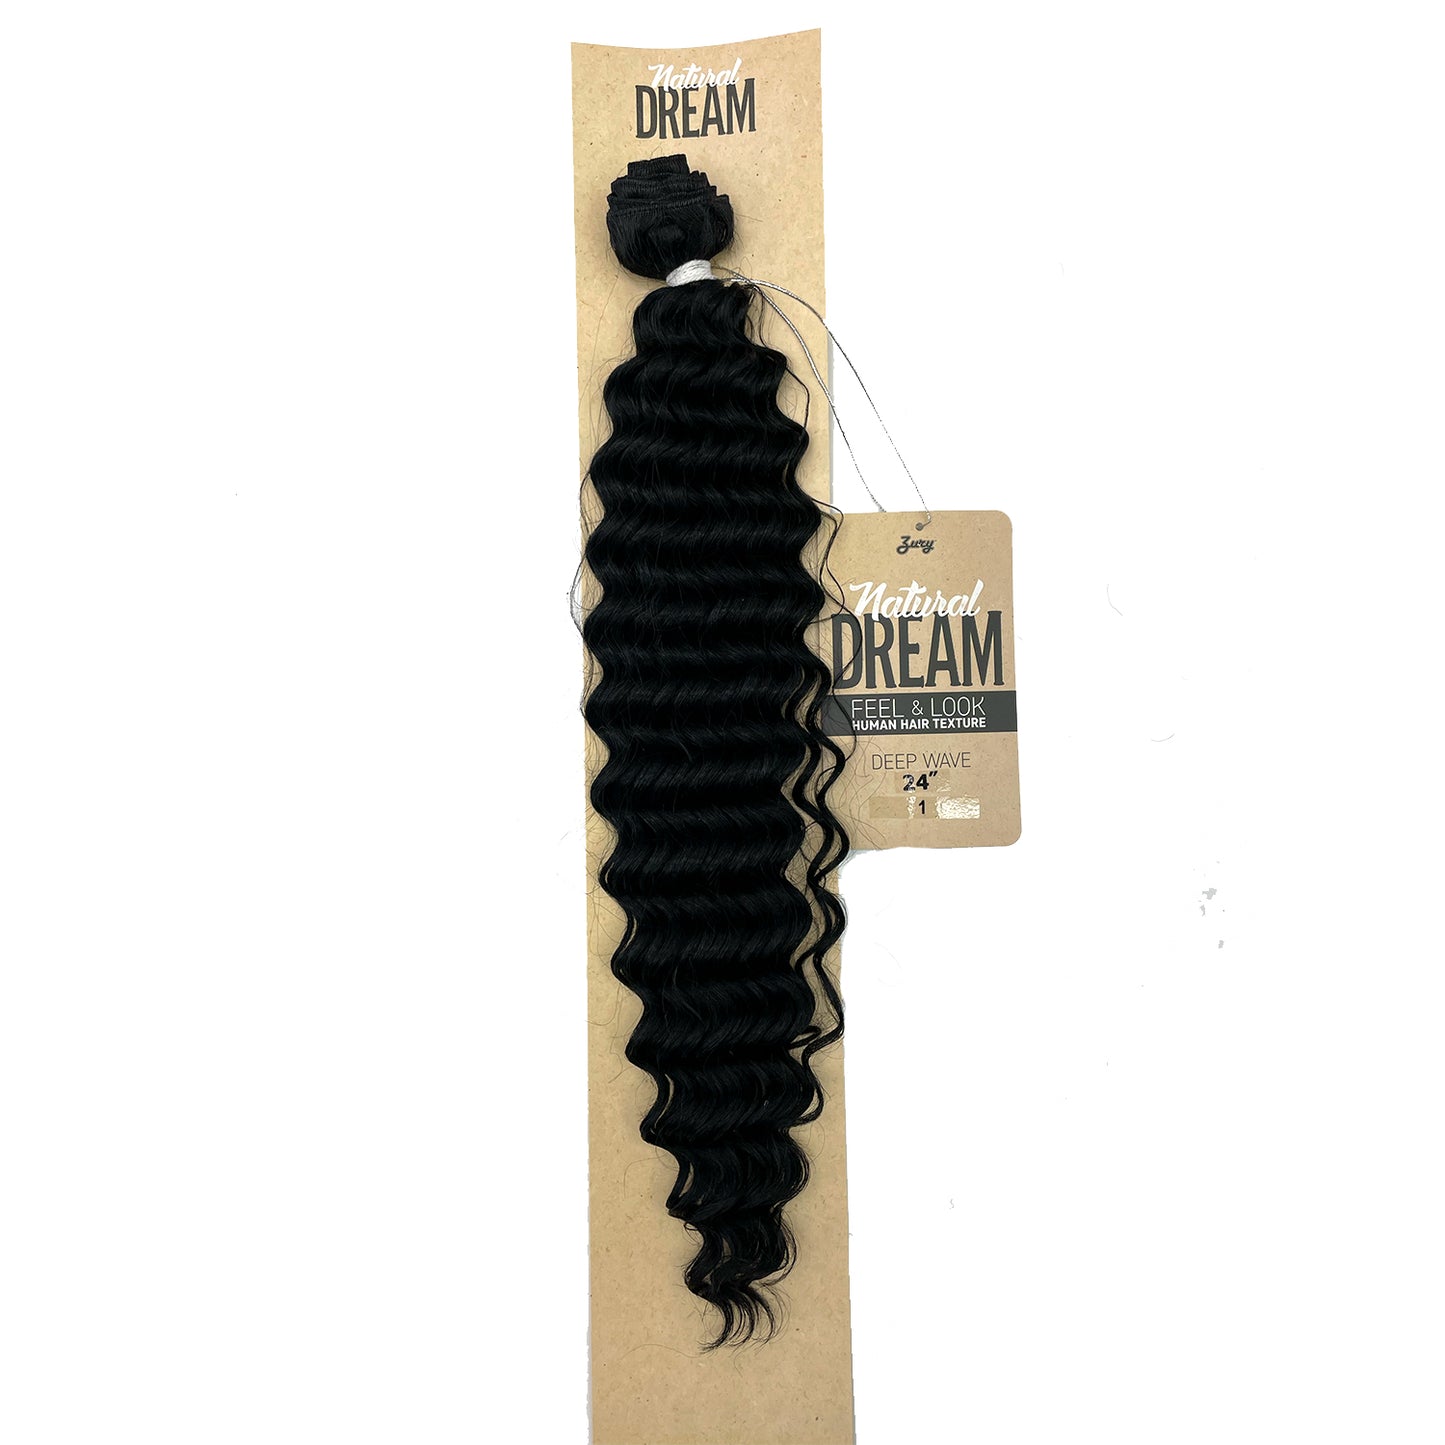 Zury Natural Dream Feel & Look Hair Extension Bundle, Deep Wave 24" 1 black